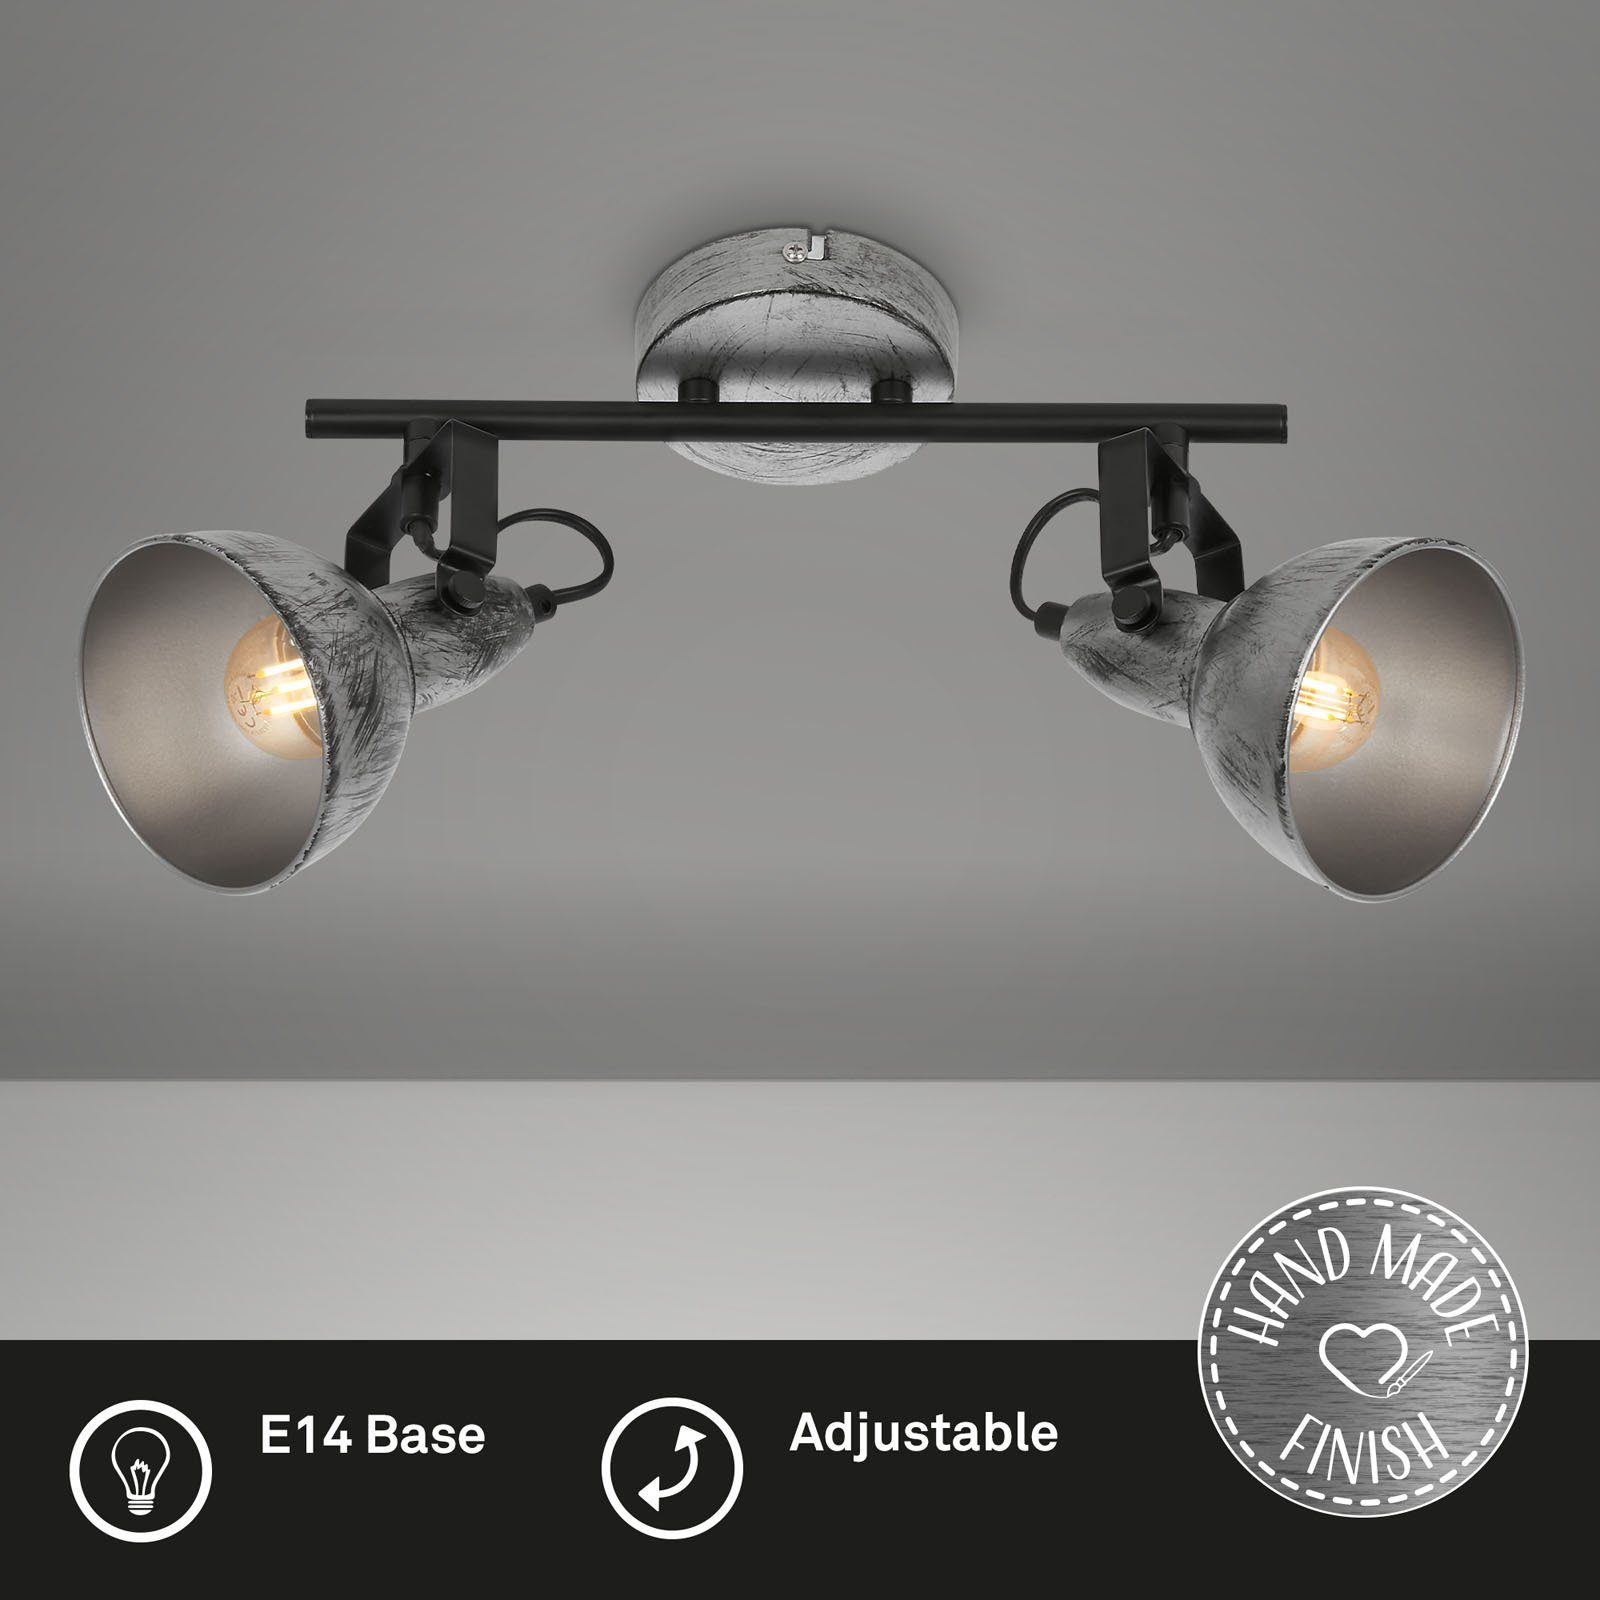 Briloner Leuchten max.40W, Antik-Silber, 2049-024, ohne Deckenlampe, schwenkbar, retro, Deckenleuchte 30,5x10x18cm, E14, Wohnzimmer Leuchtmittel